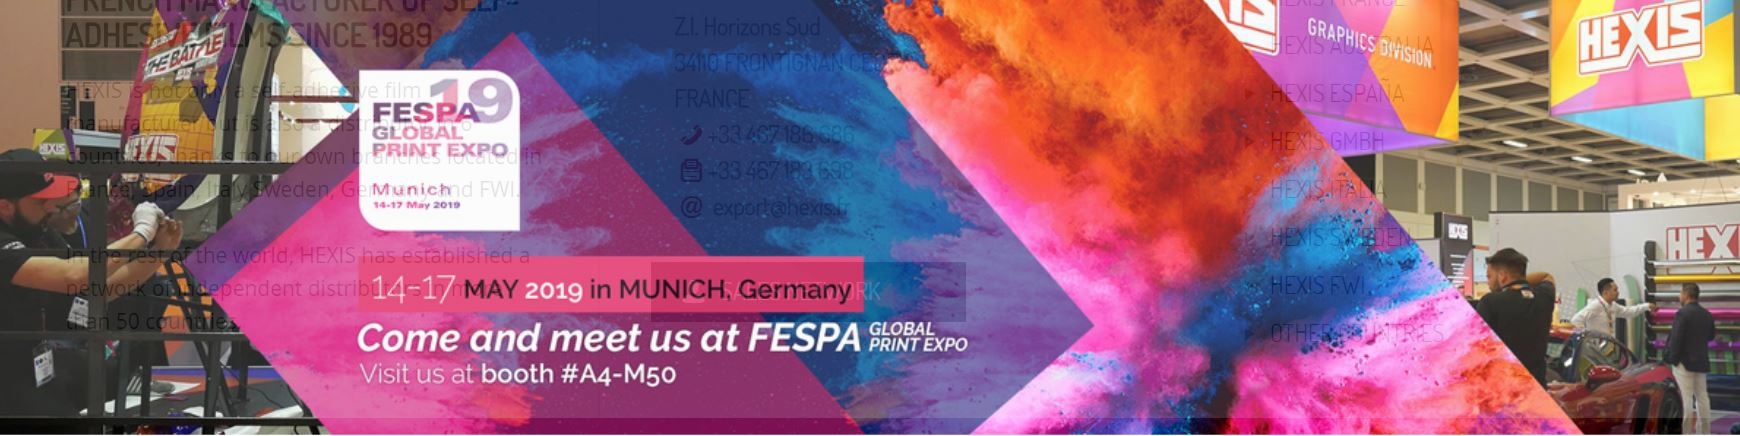 Hexis FESPA 2019